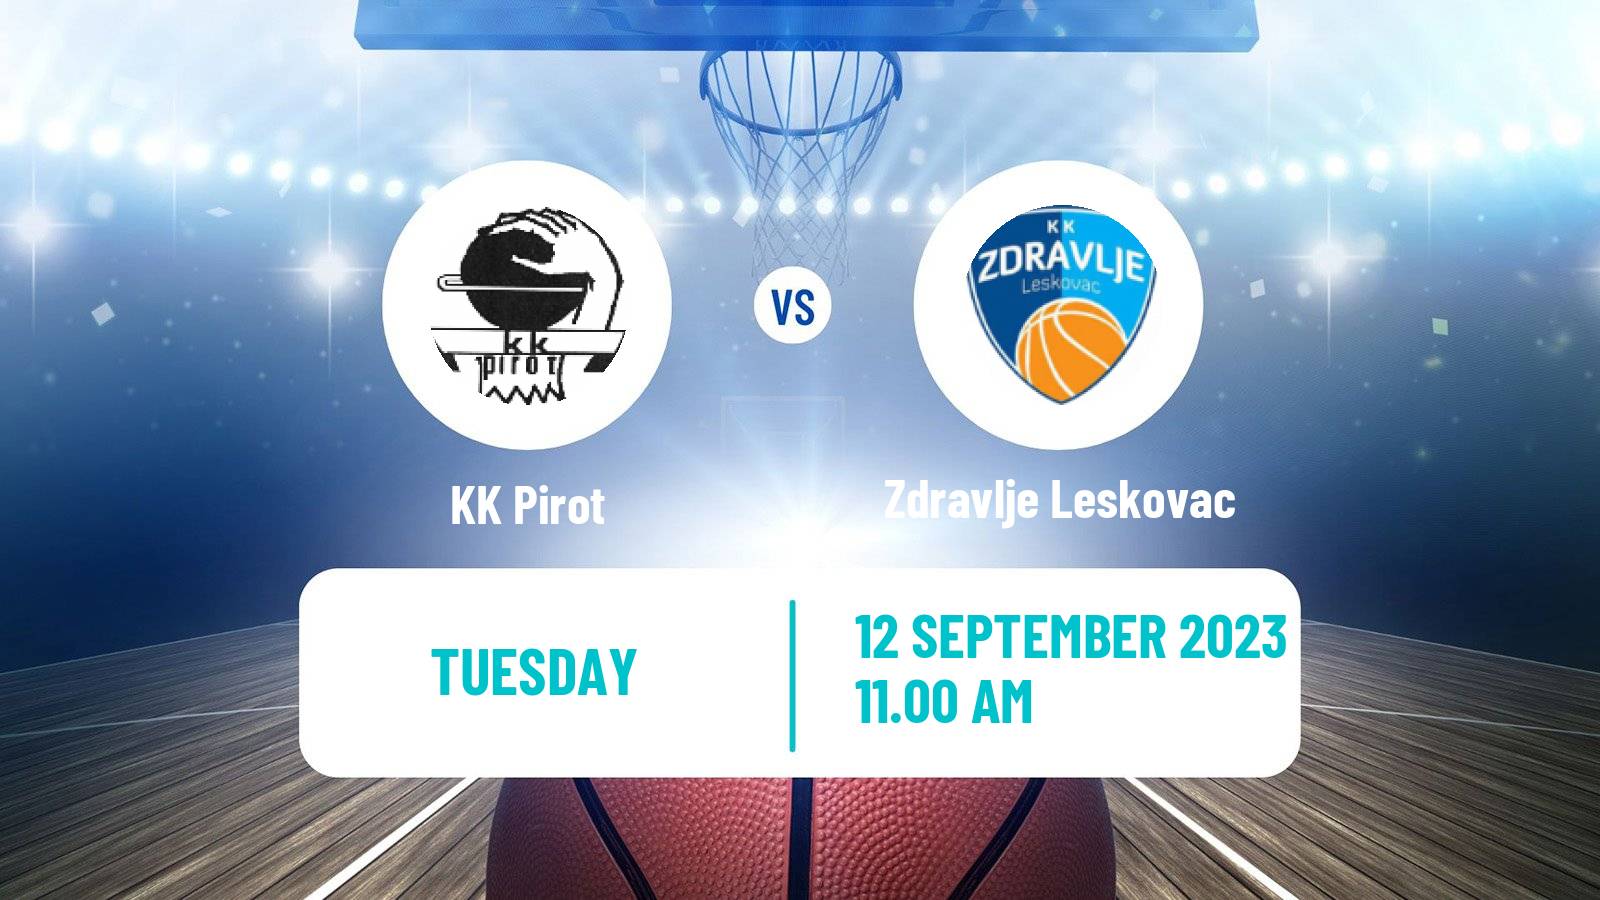 Basketball Club Friendly Basketball Pirot - Zdravlje Leskovac